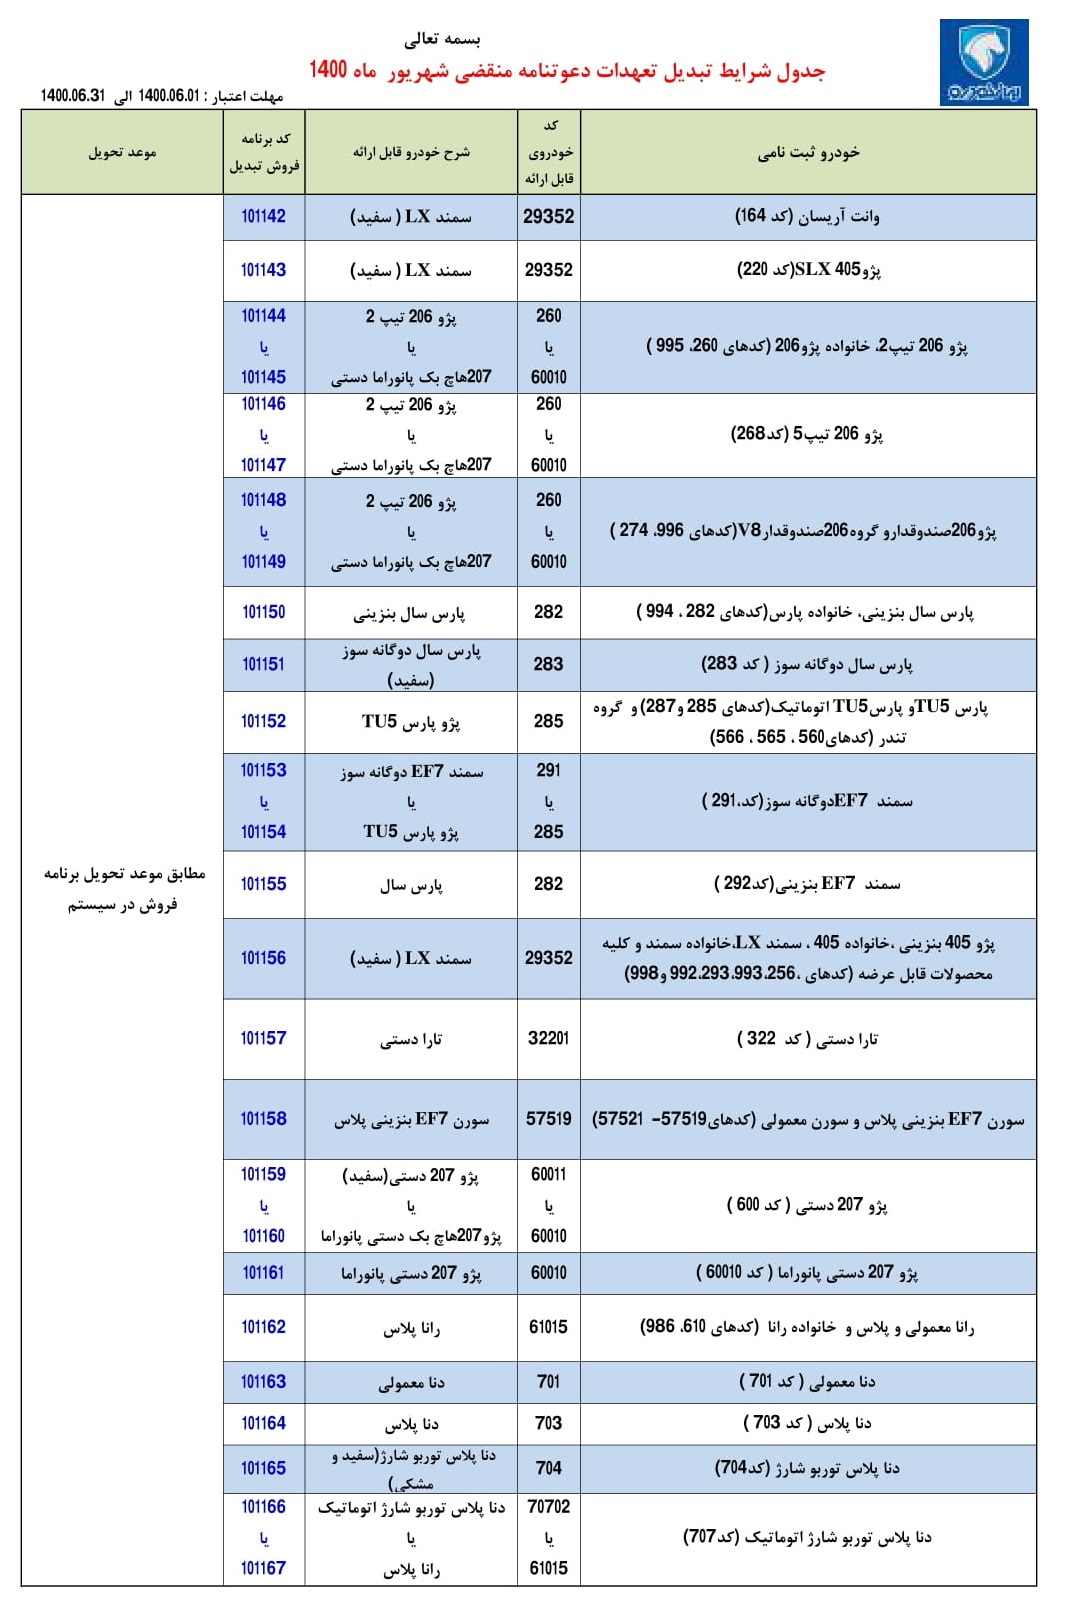 تبدیل حواله های ایران خودرو به سایر محصولات - شهریور 1400